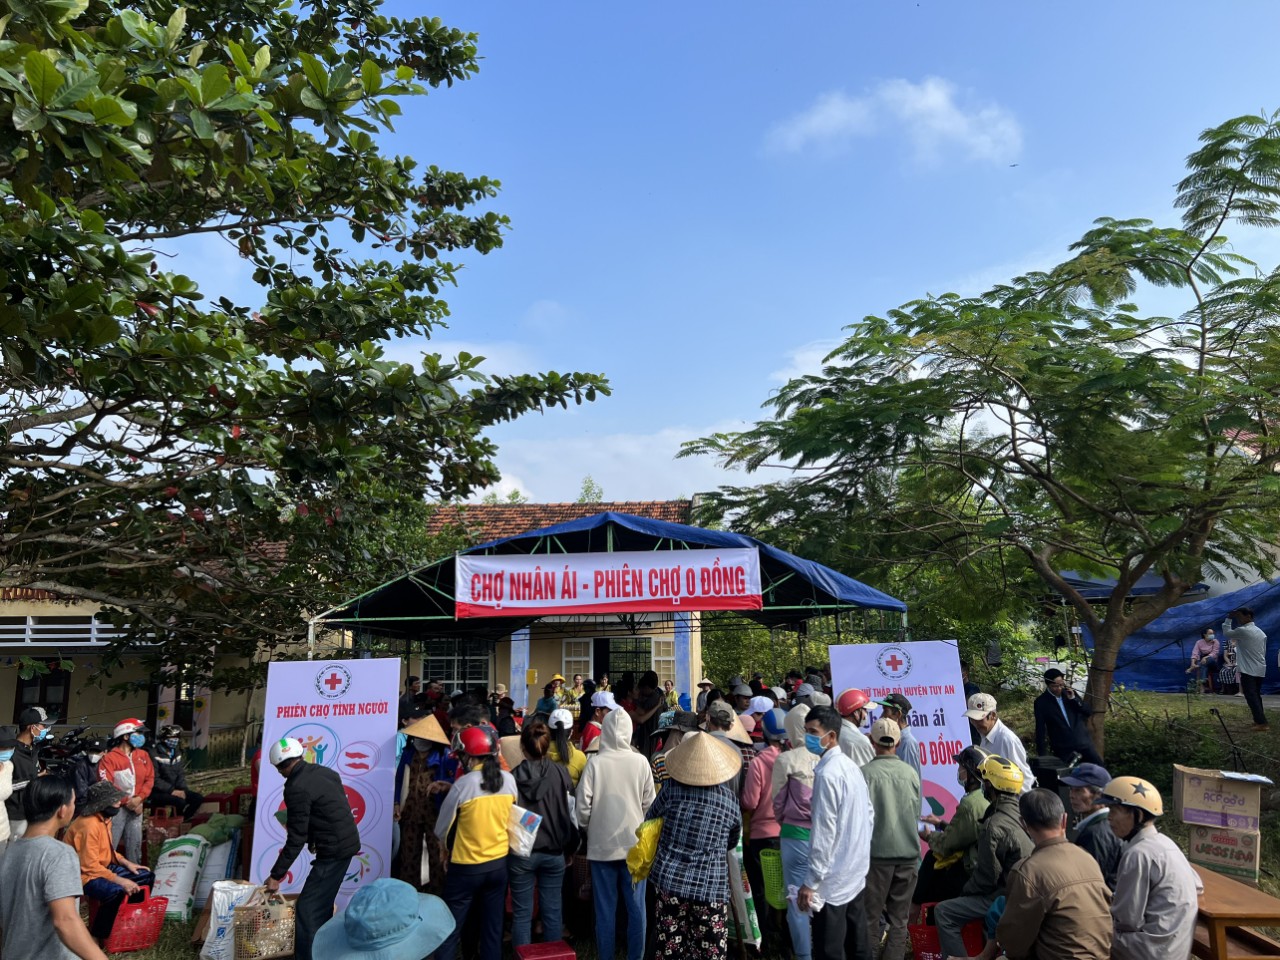 Tại chợ nhân ái, phiên chợ 0 đồng tại thôn Phong Lãnh, xã An Lĩnh, huyện Tuy An (Phú Yên)